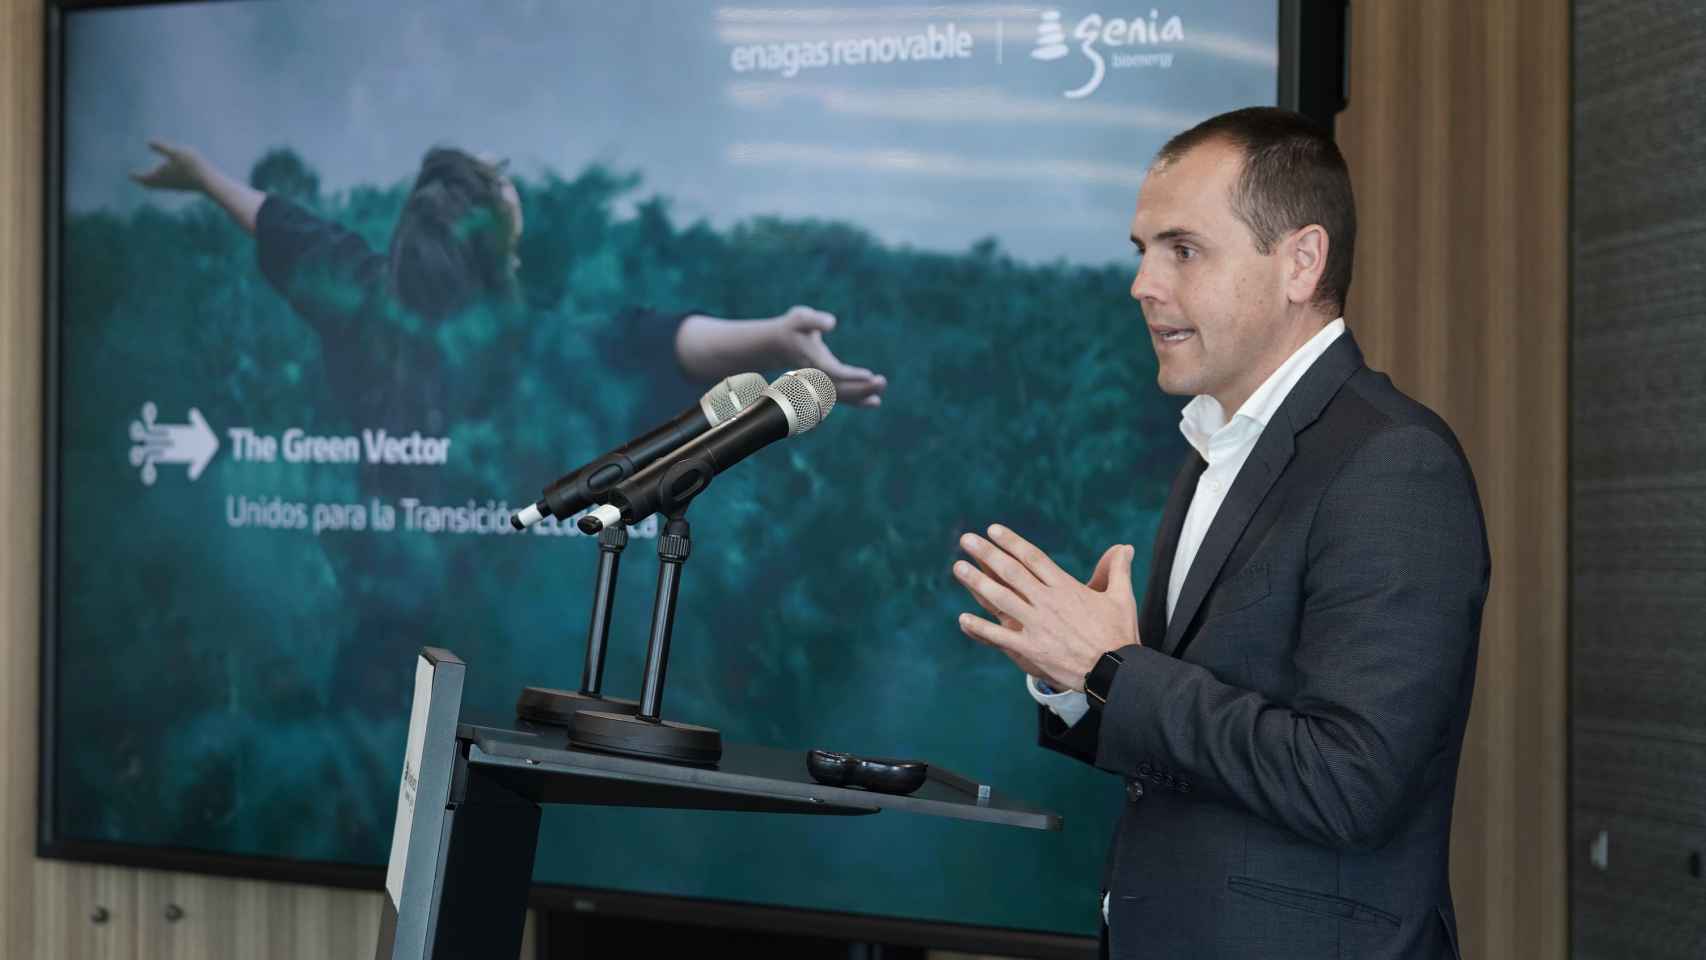 Antón Martínez, CEO de Enagás Renovable, durante la presentación de la plataforma The Green Vector.